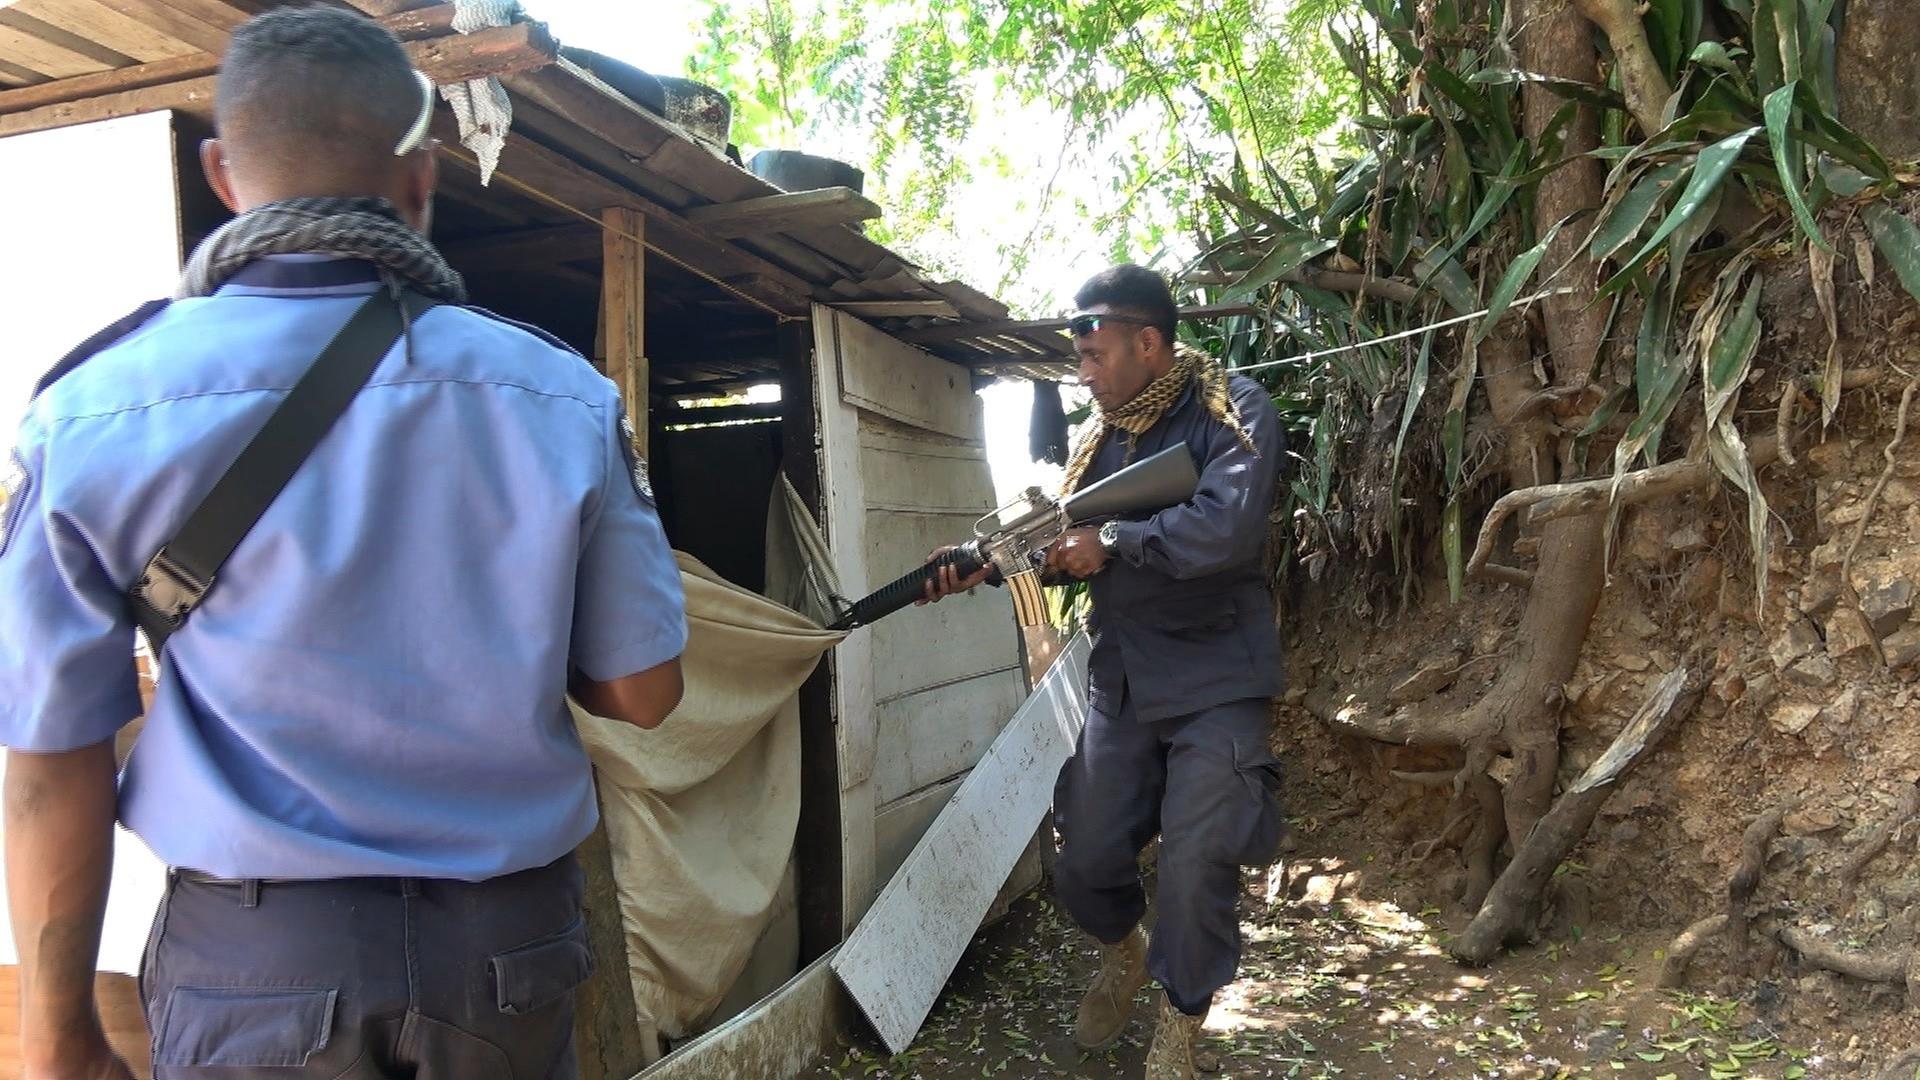 Zwei Männer stehen neben einer Holzhütte. Einer von ihnen hält eine Waffe und zielt in die Hütte hinein.